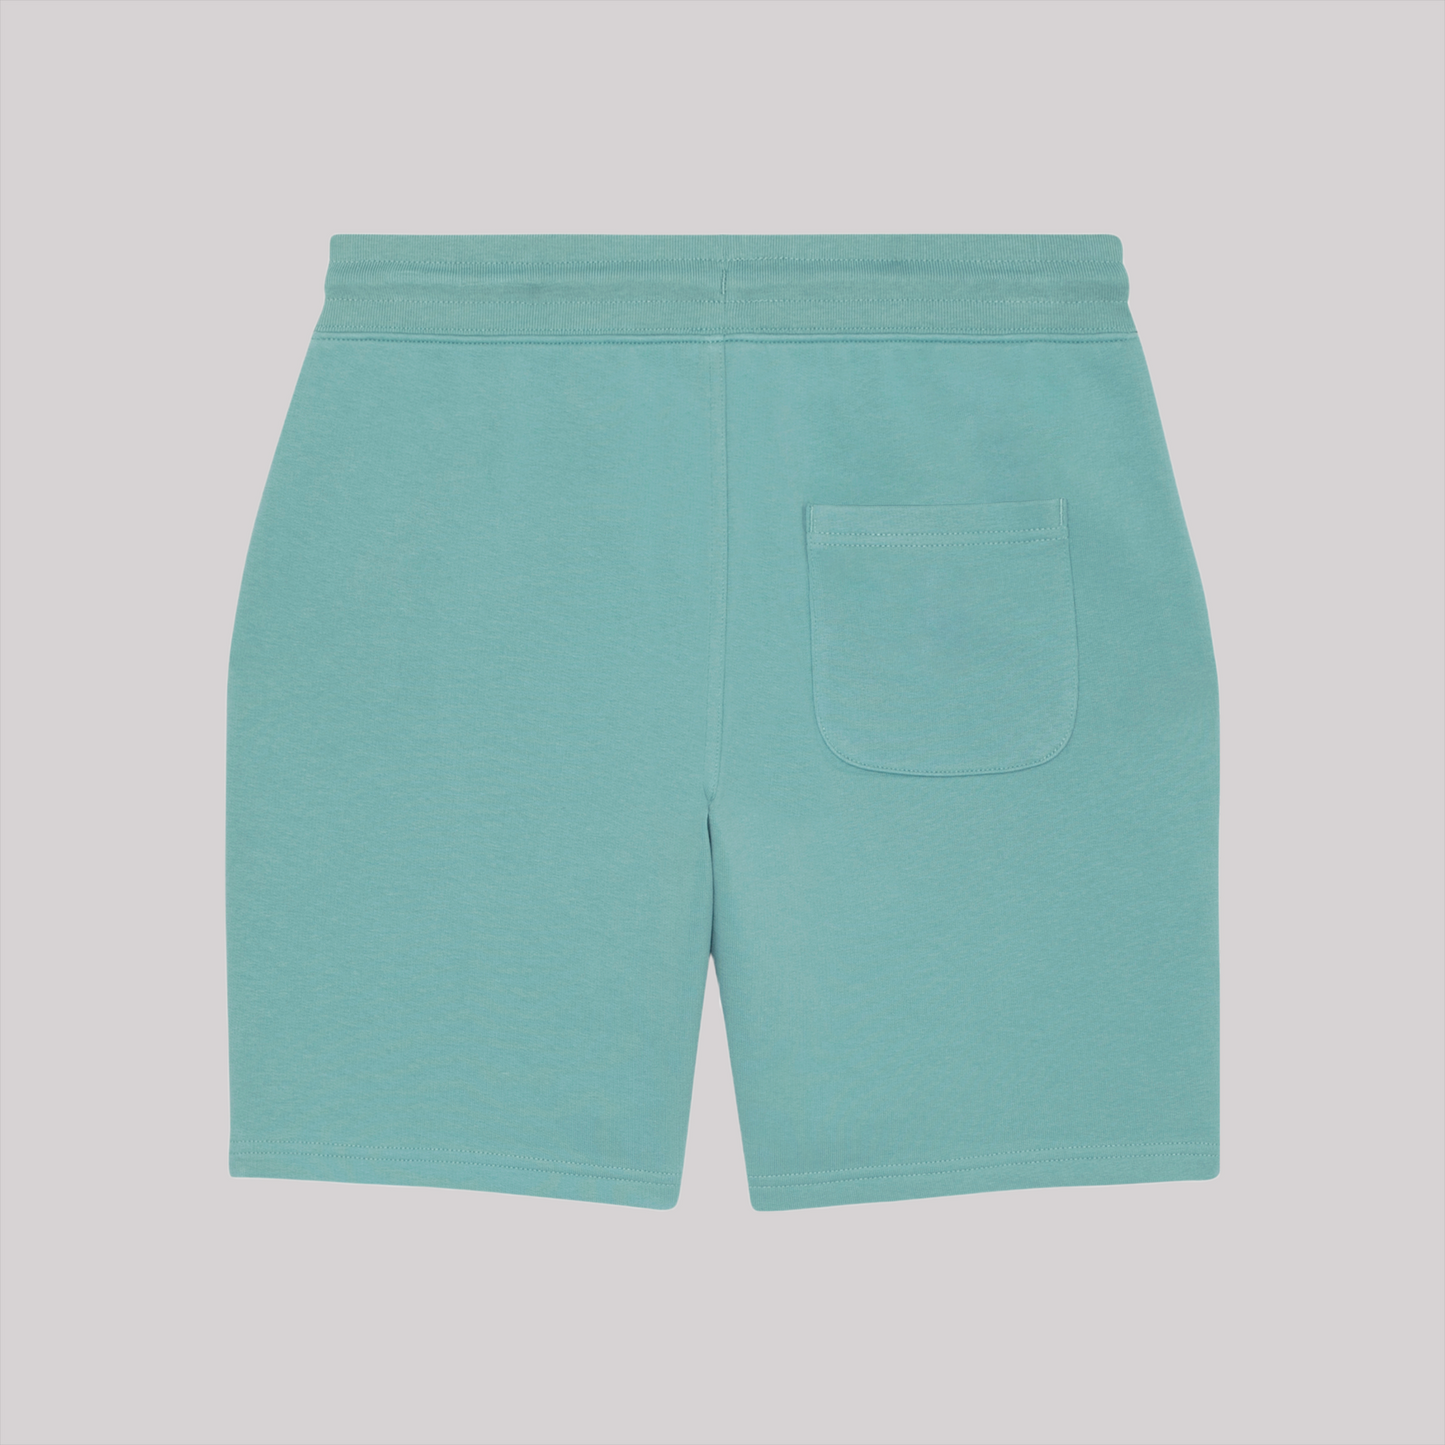 LLC Shorts (Aqua Sky)